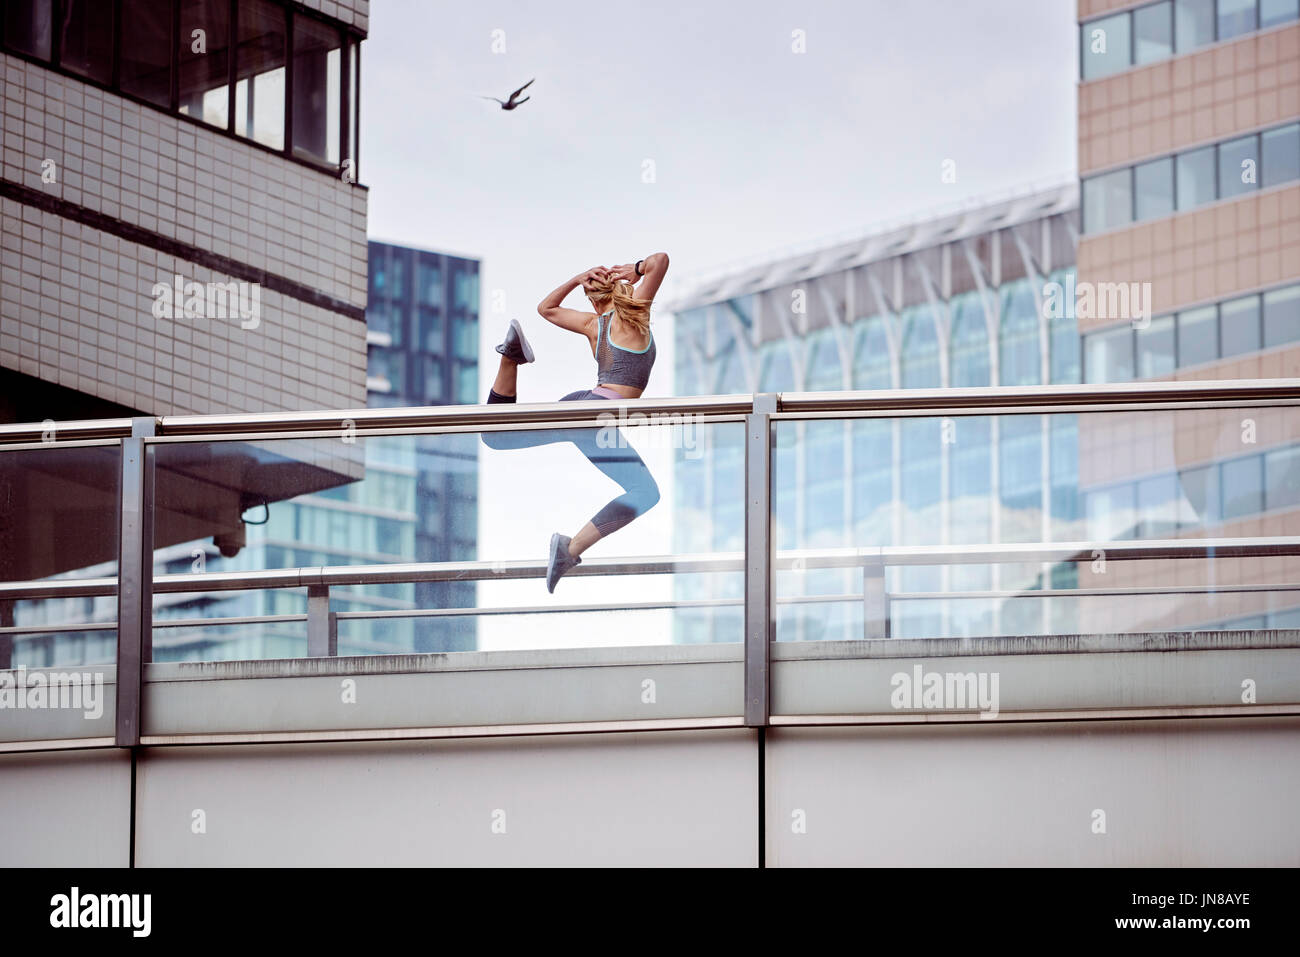 Una giovane donna esprime la sua gioia e libertà saltando in aria in un paesaggio urbano Foto Stock